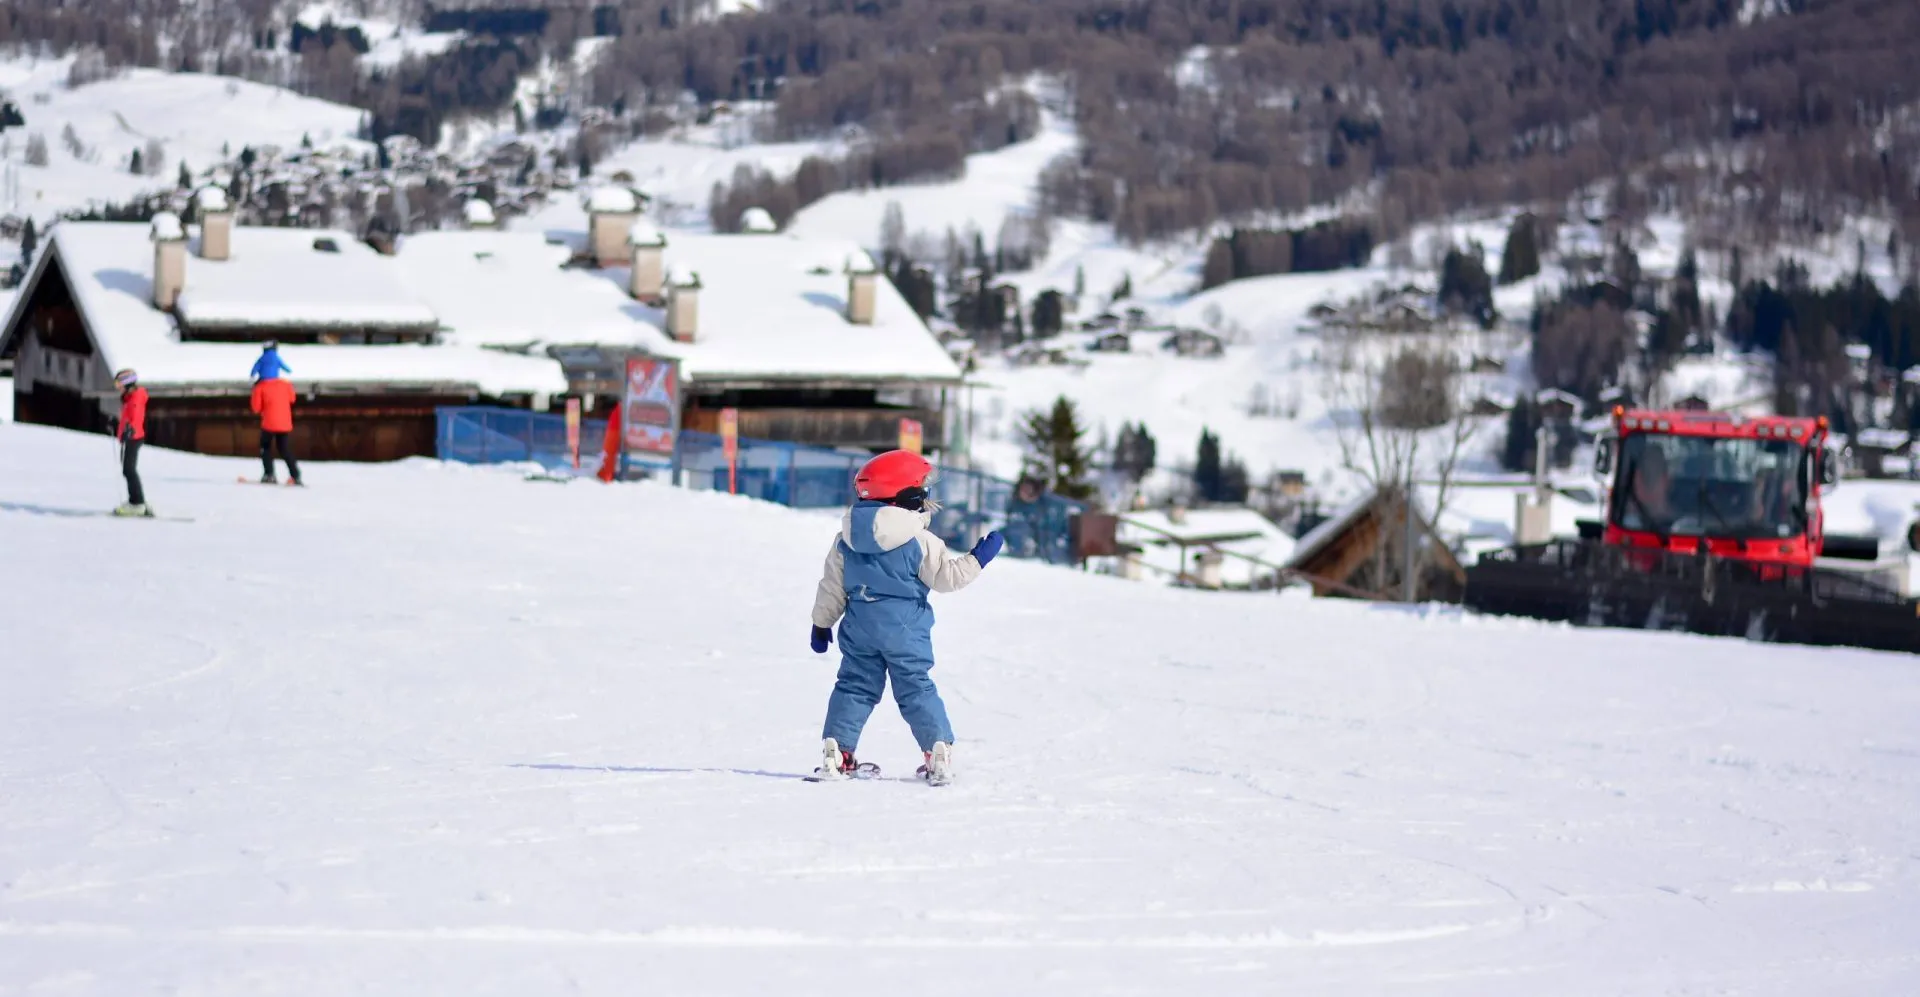 Child on skis at kronplatz ski resort